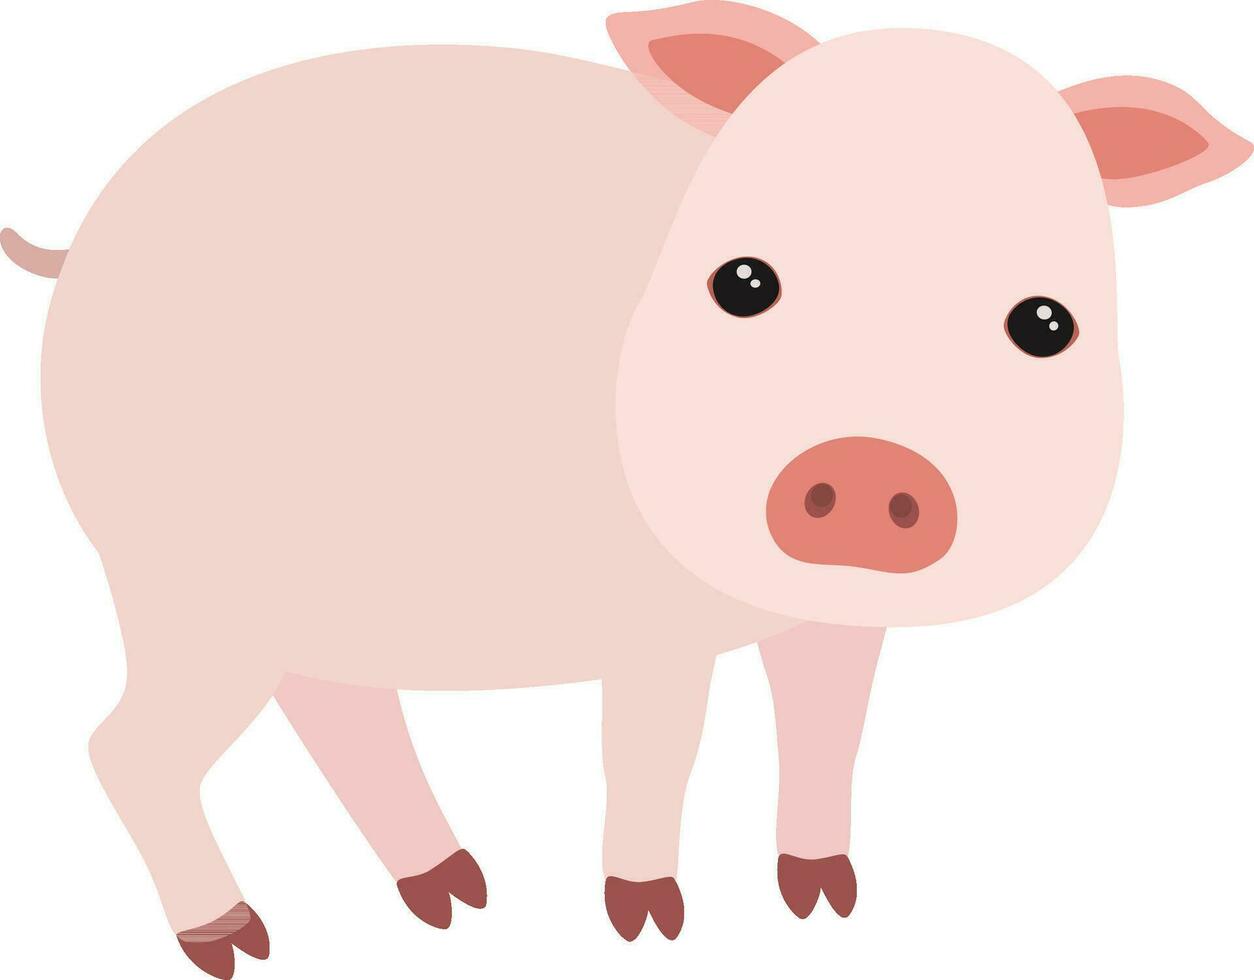 Cute Pig illustration vector